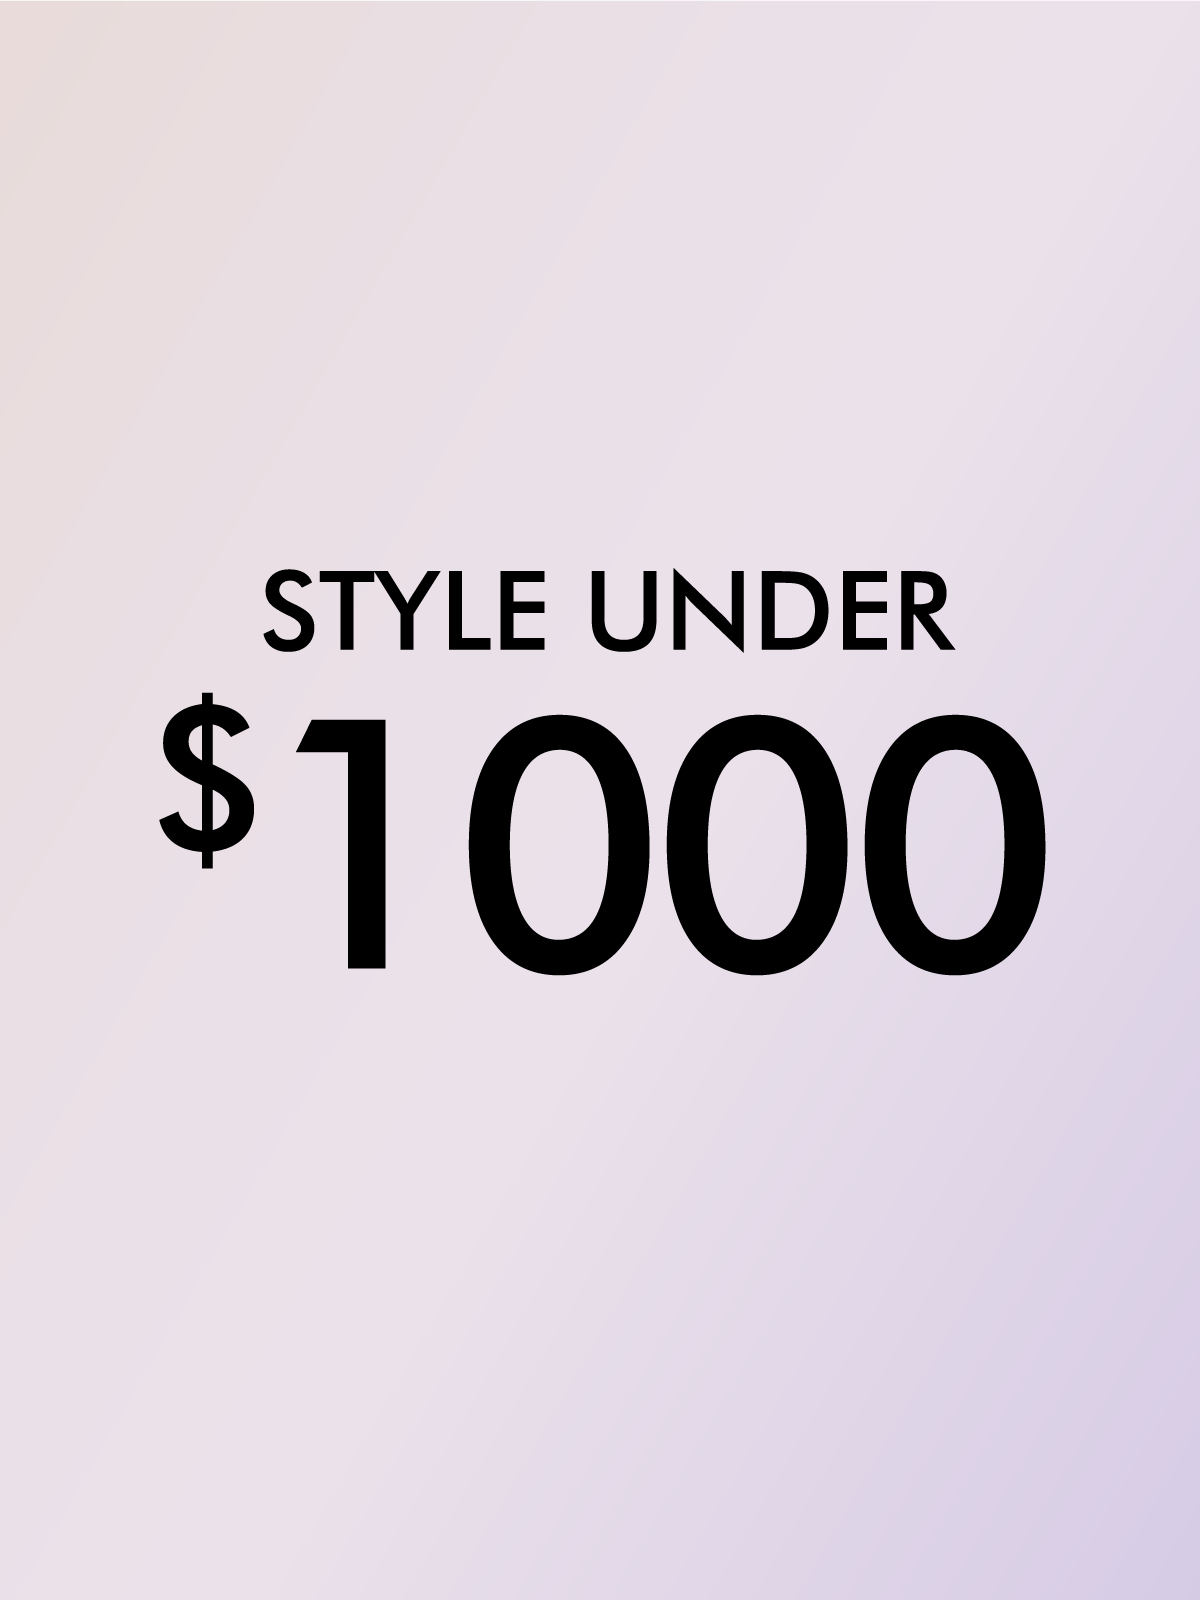 STYLES UNDER $1000